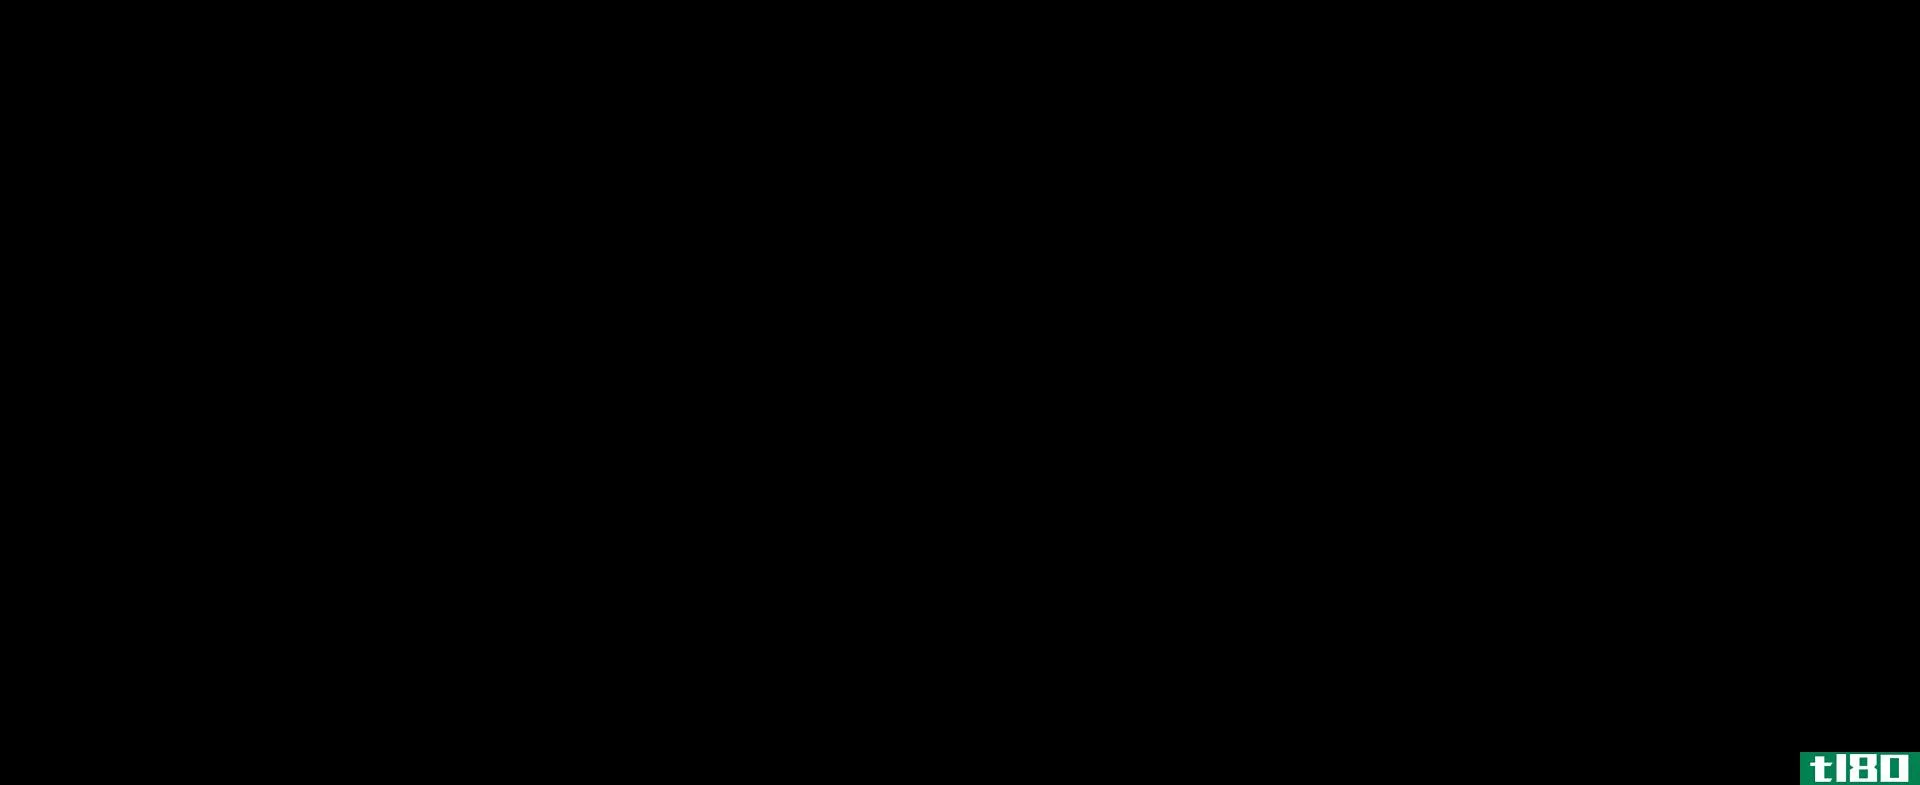 阿尔法(alpha)和β-蒎烯(beta pinene)的区别